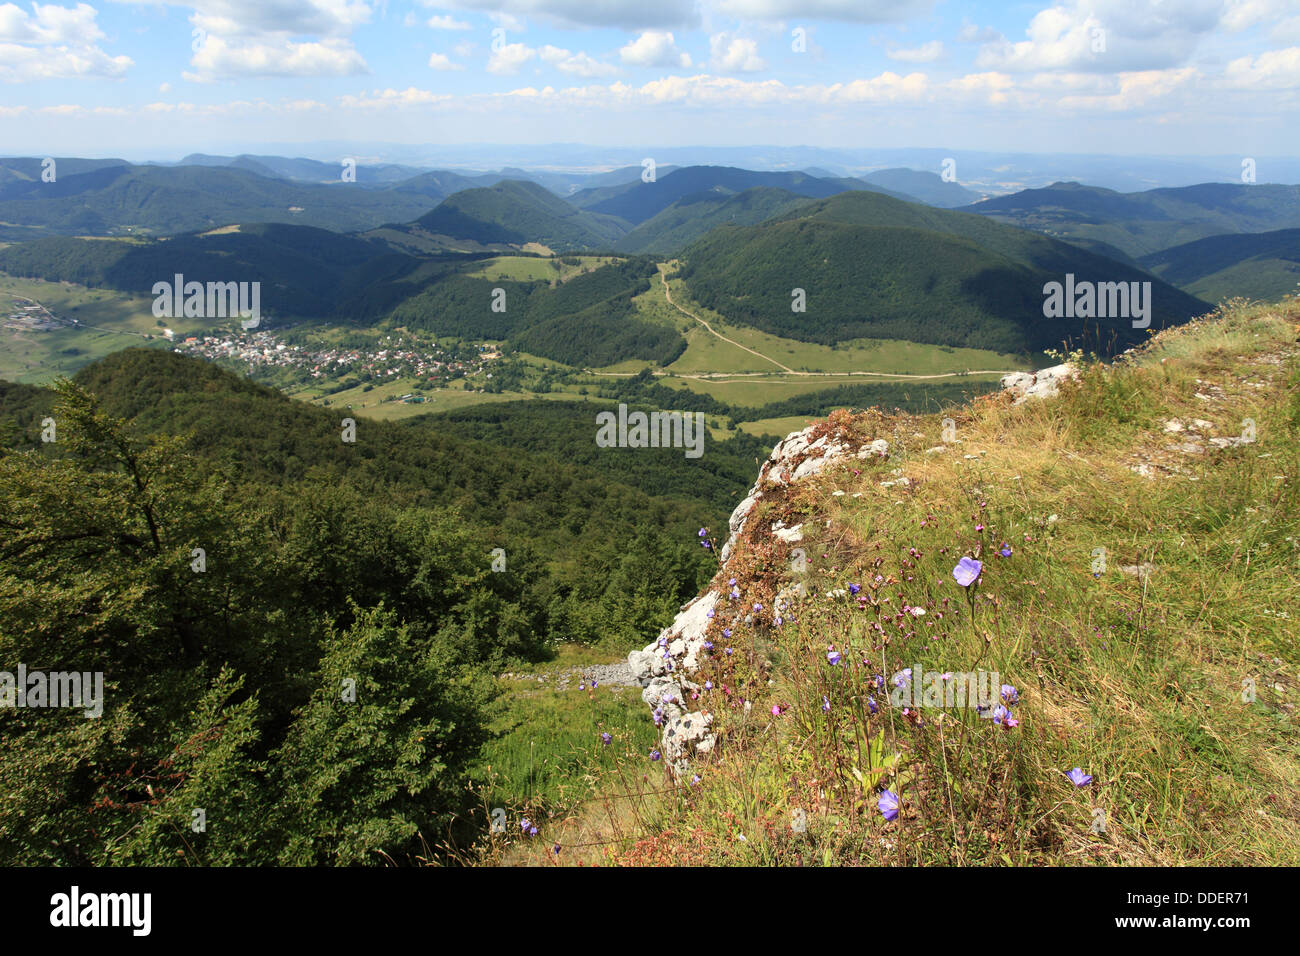 View of village Zliechov from Strazov peak, Strazovske vrchy, Slovakia. Stock Photo